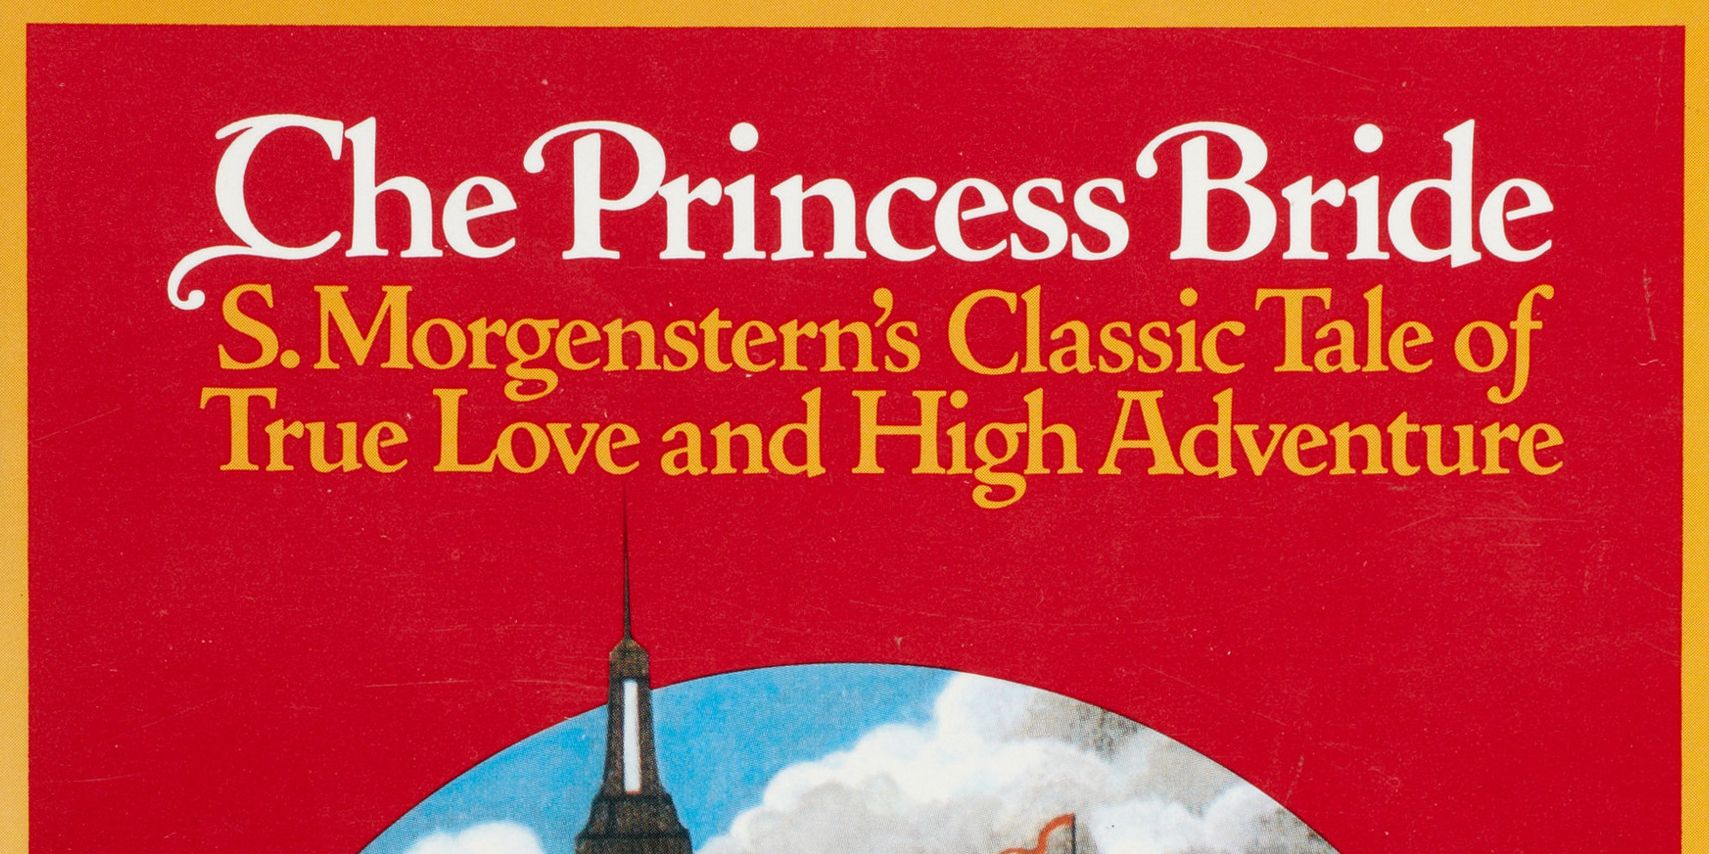 The original cover of the book The Princess Bride